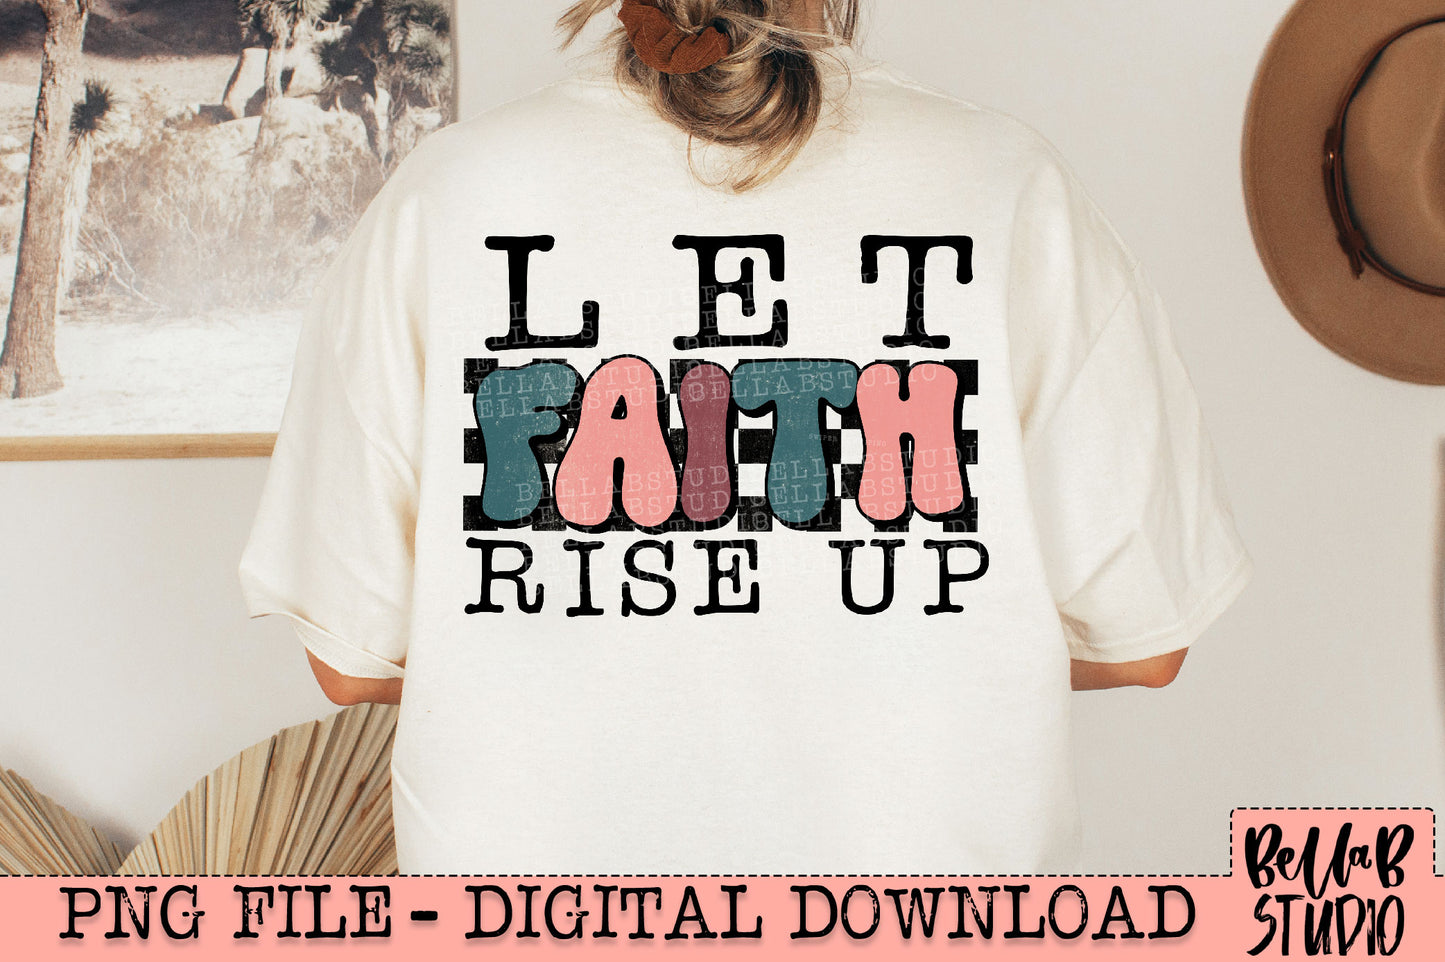 Let Faith Rise Up PNG Design